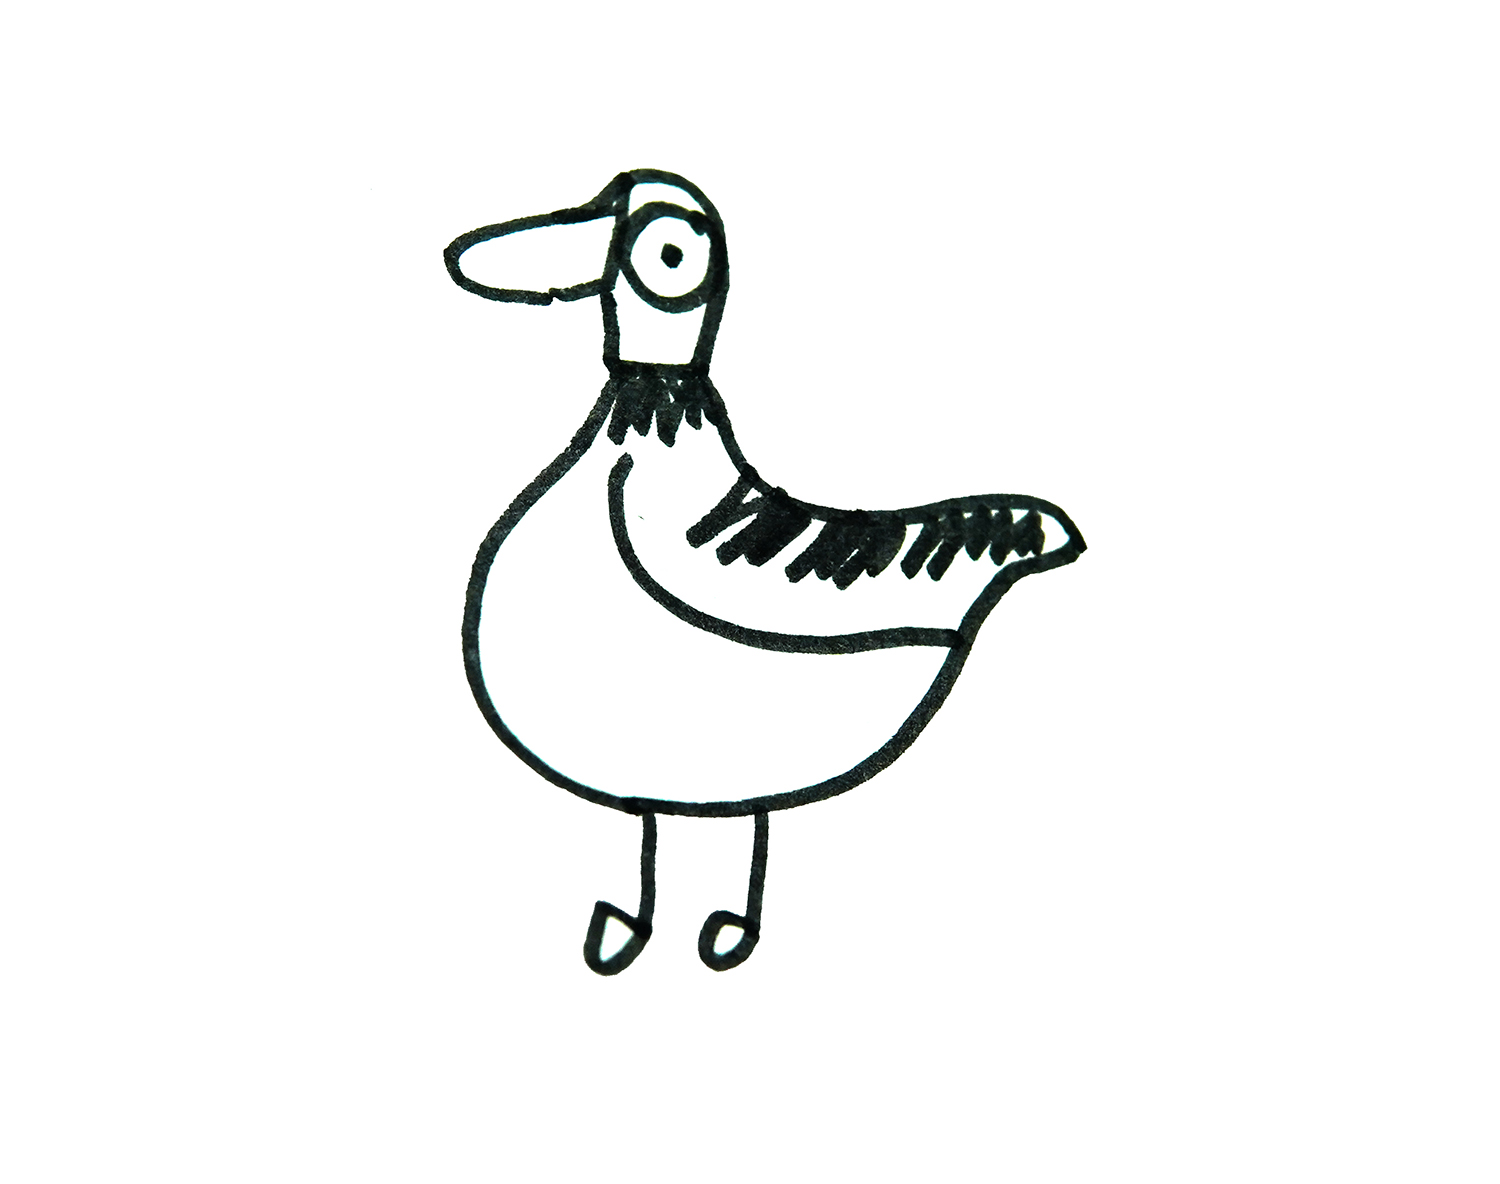 简单有趣的动物简笔画系列之鸭子的画法图解 肉丁儿童网